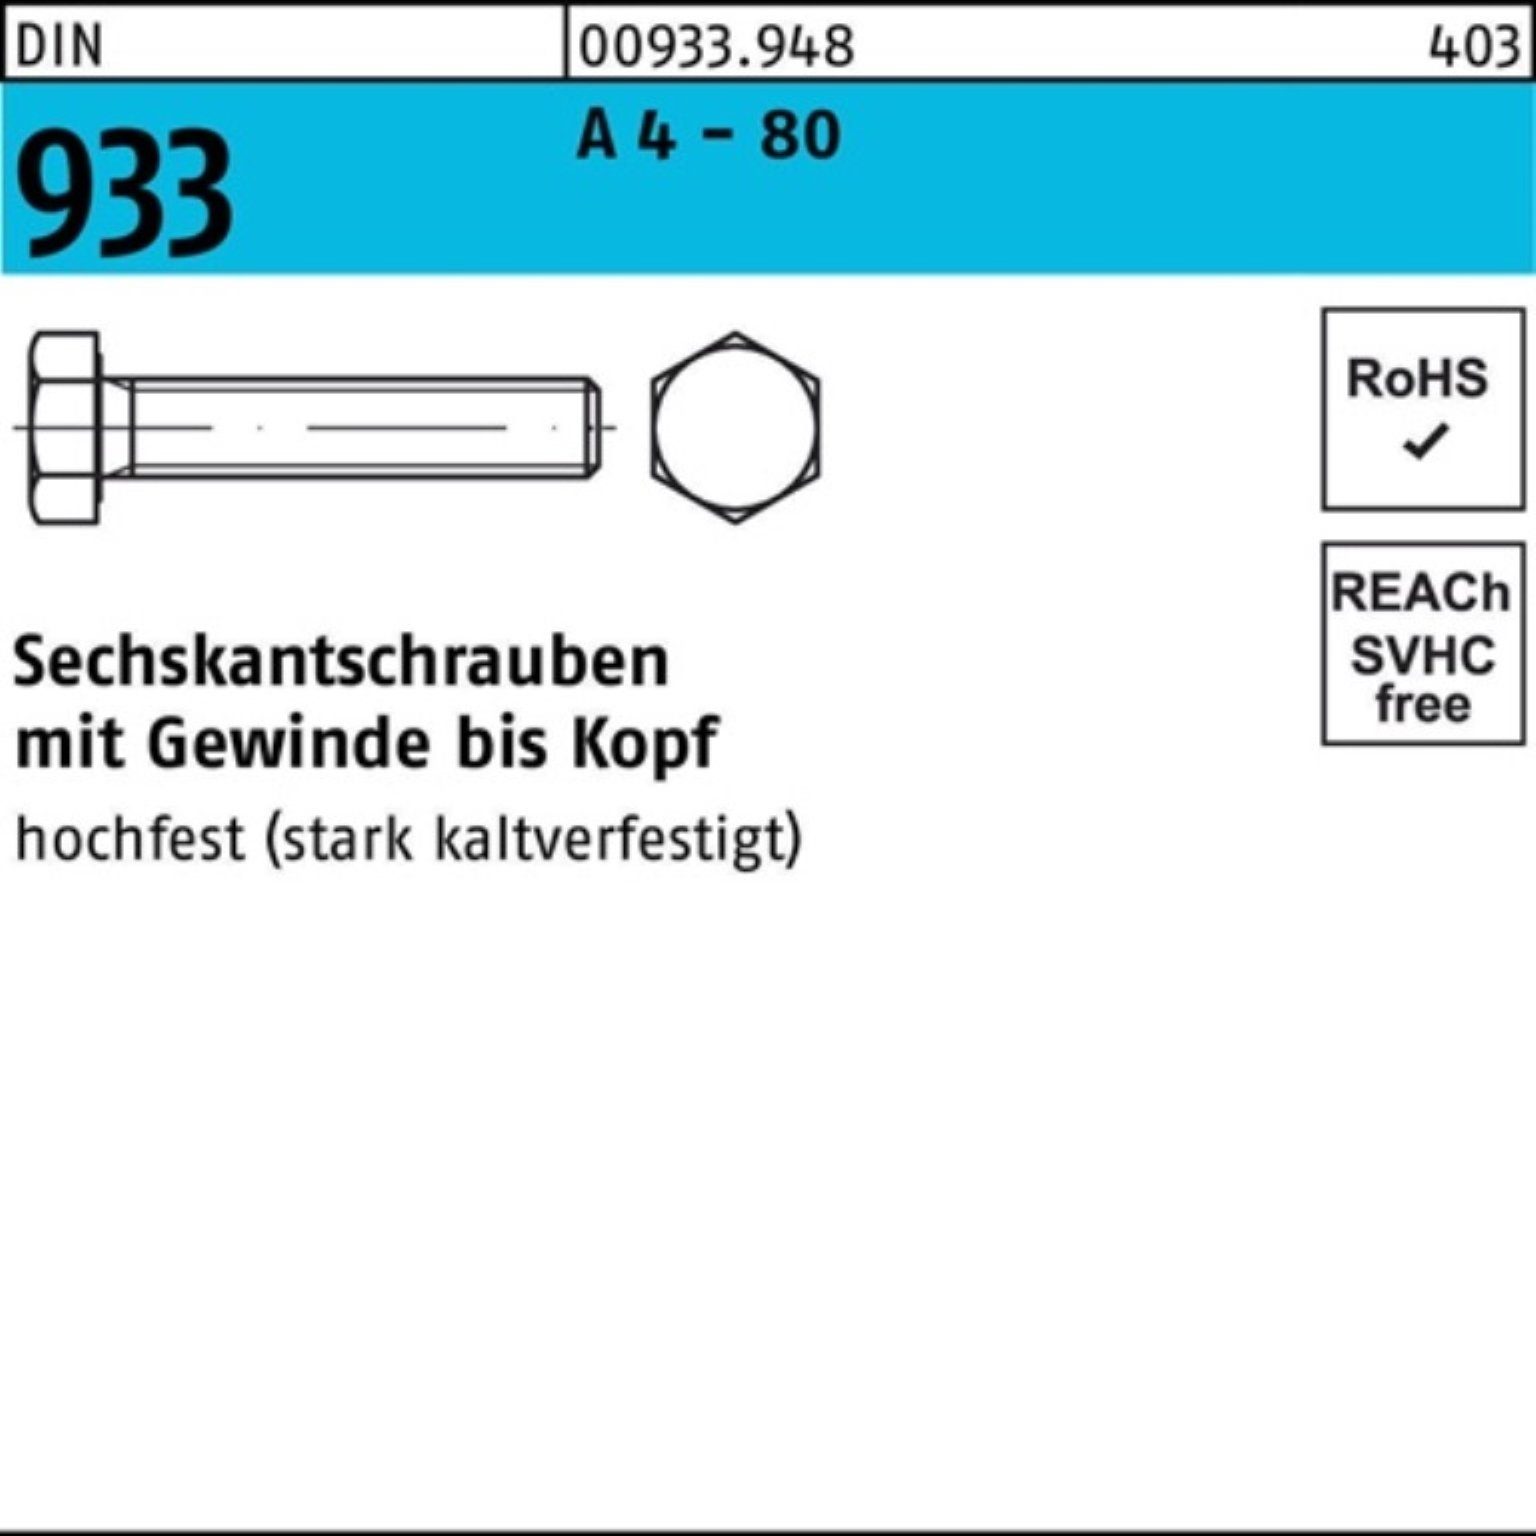 Reyher Sechskantschraube 100er Pack Sechskantschraube DIN 933 VG M10x 100 A 4 - 80 50 Stück DI